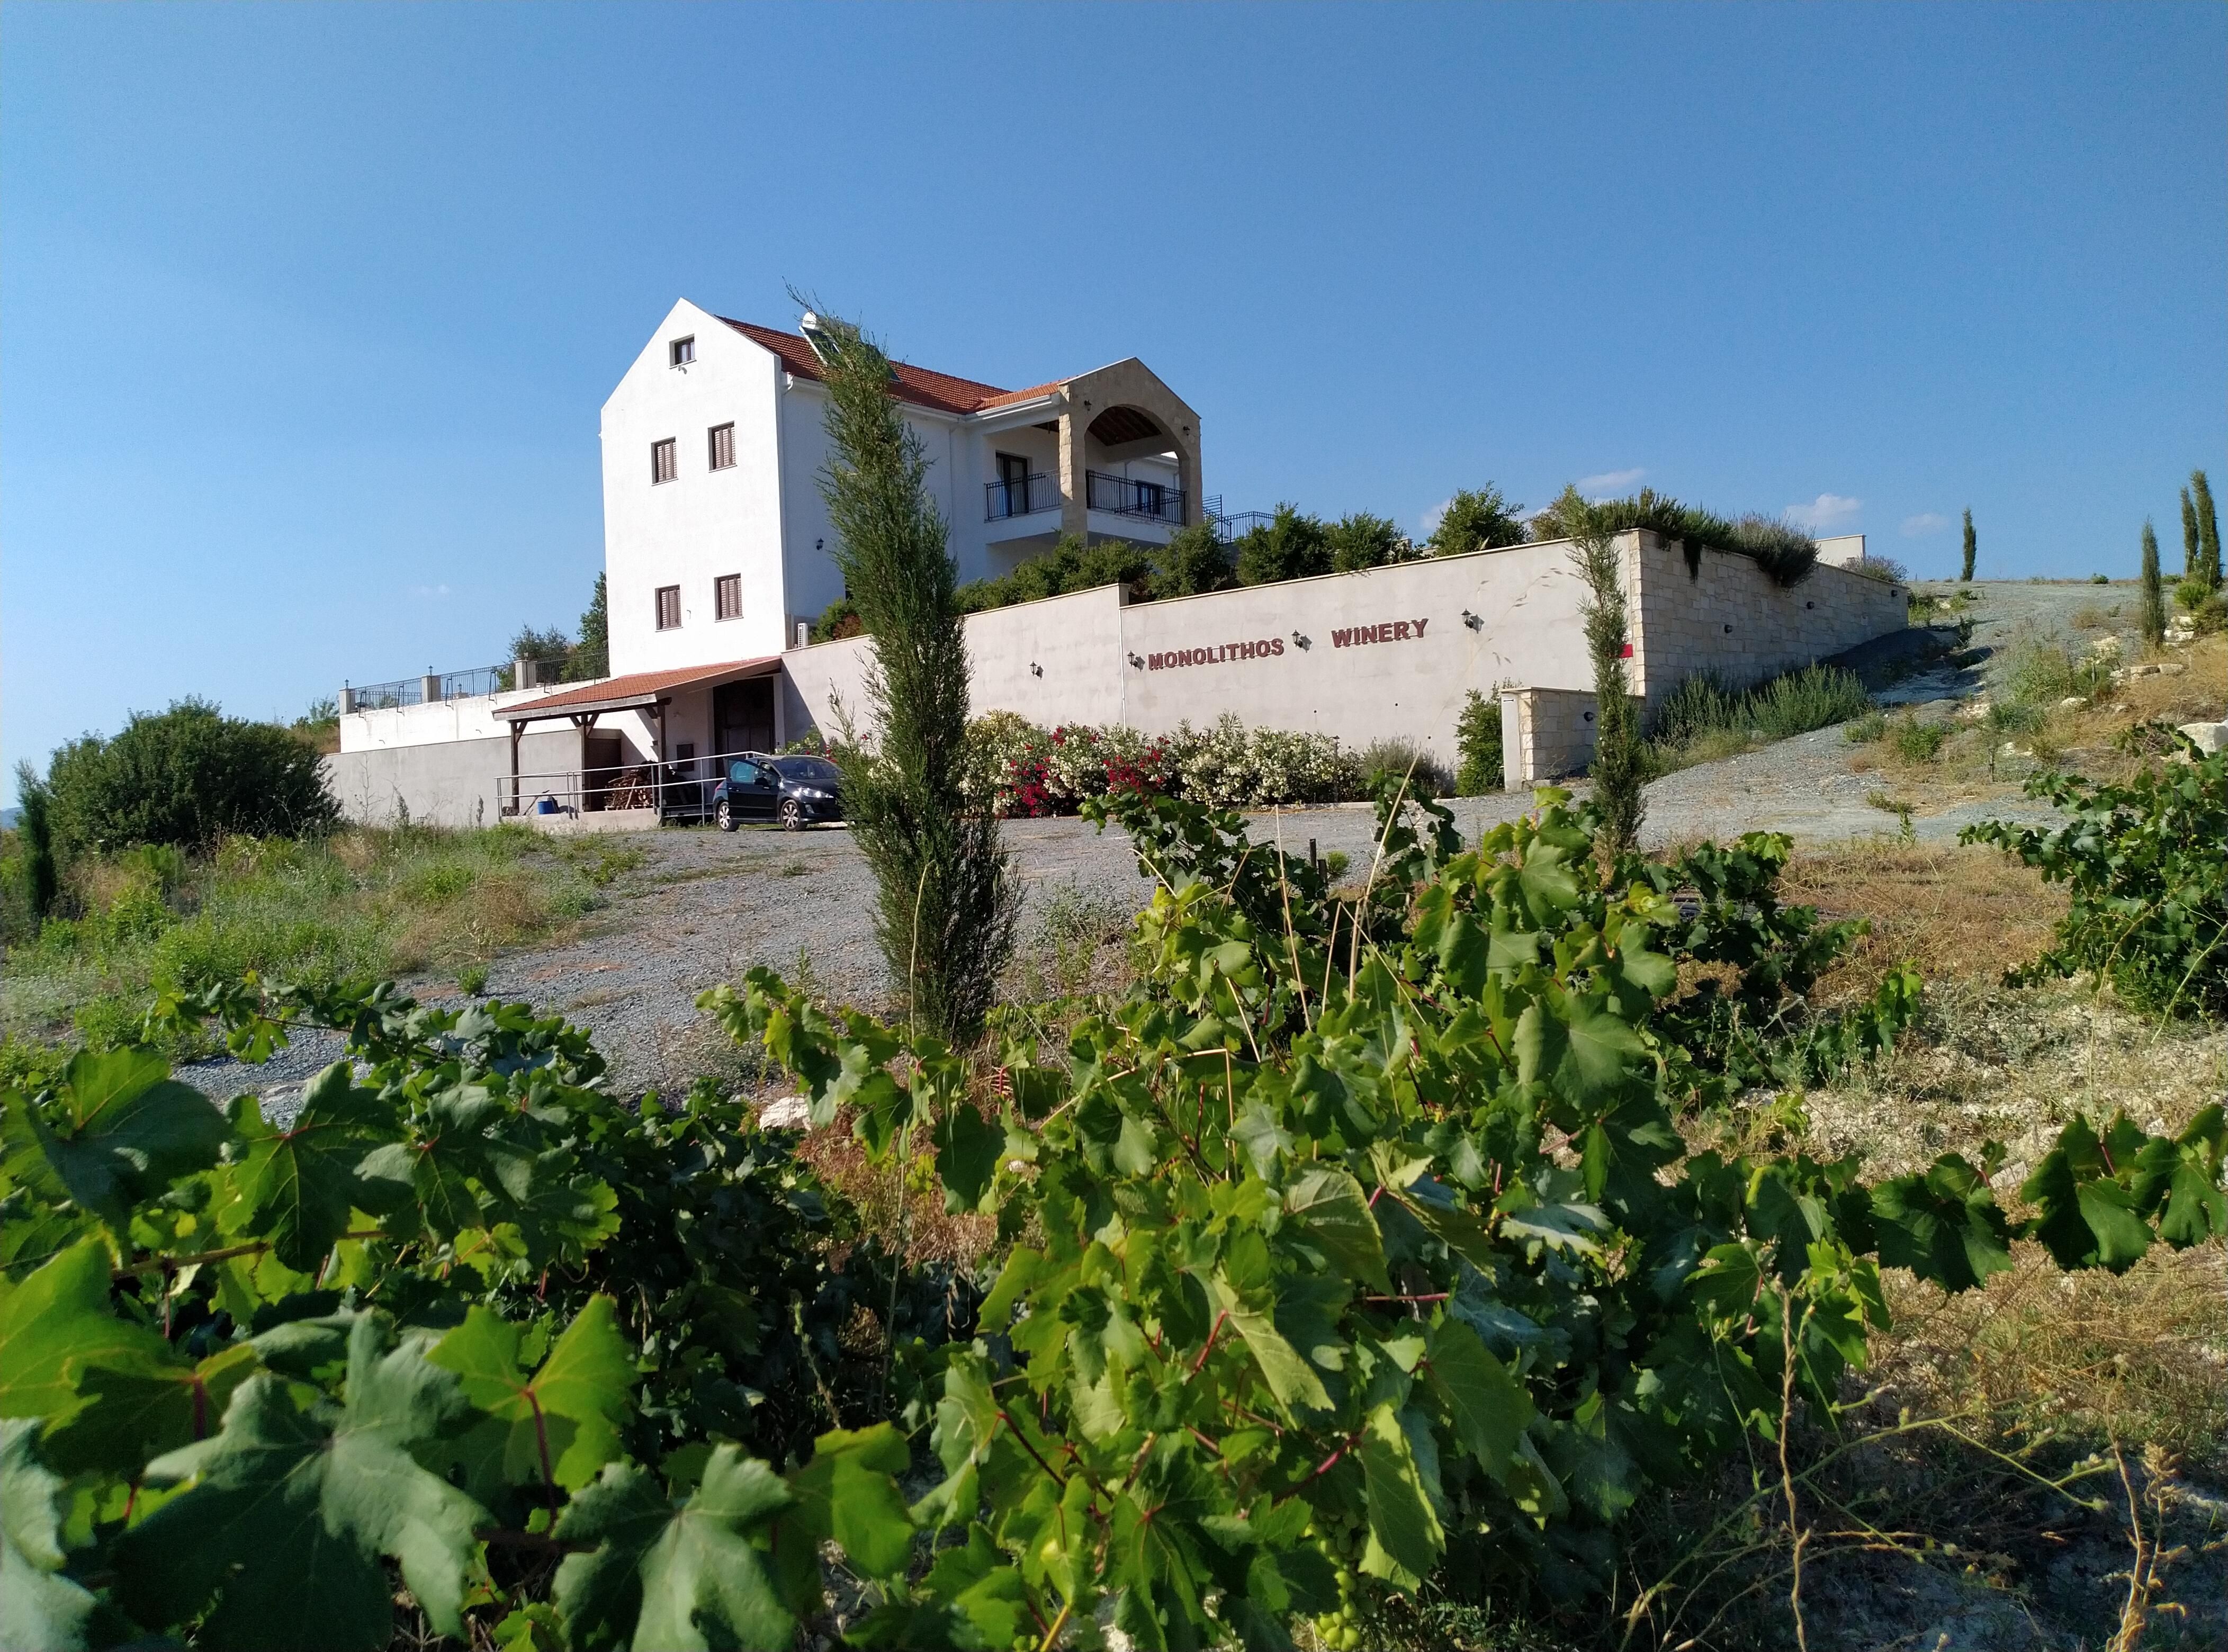 Monolithos winery view